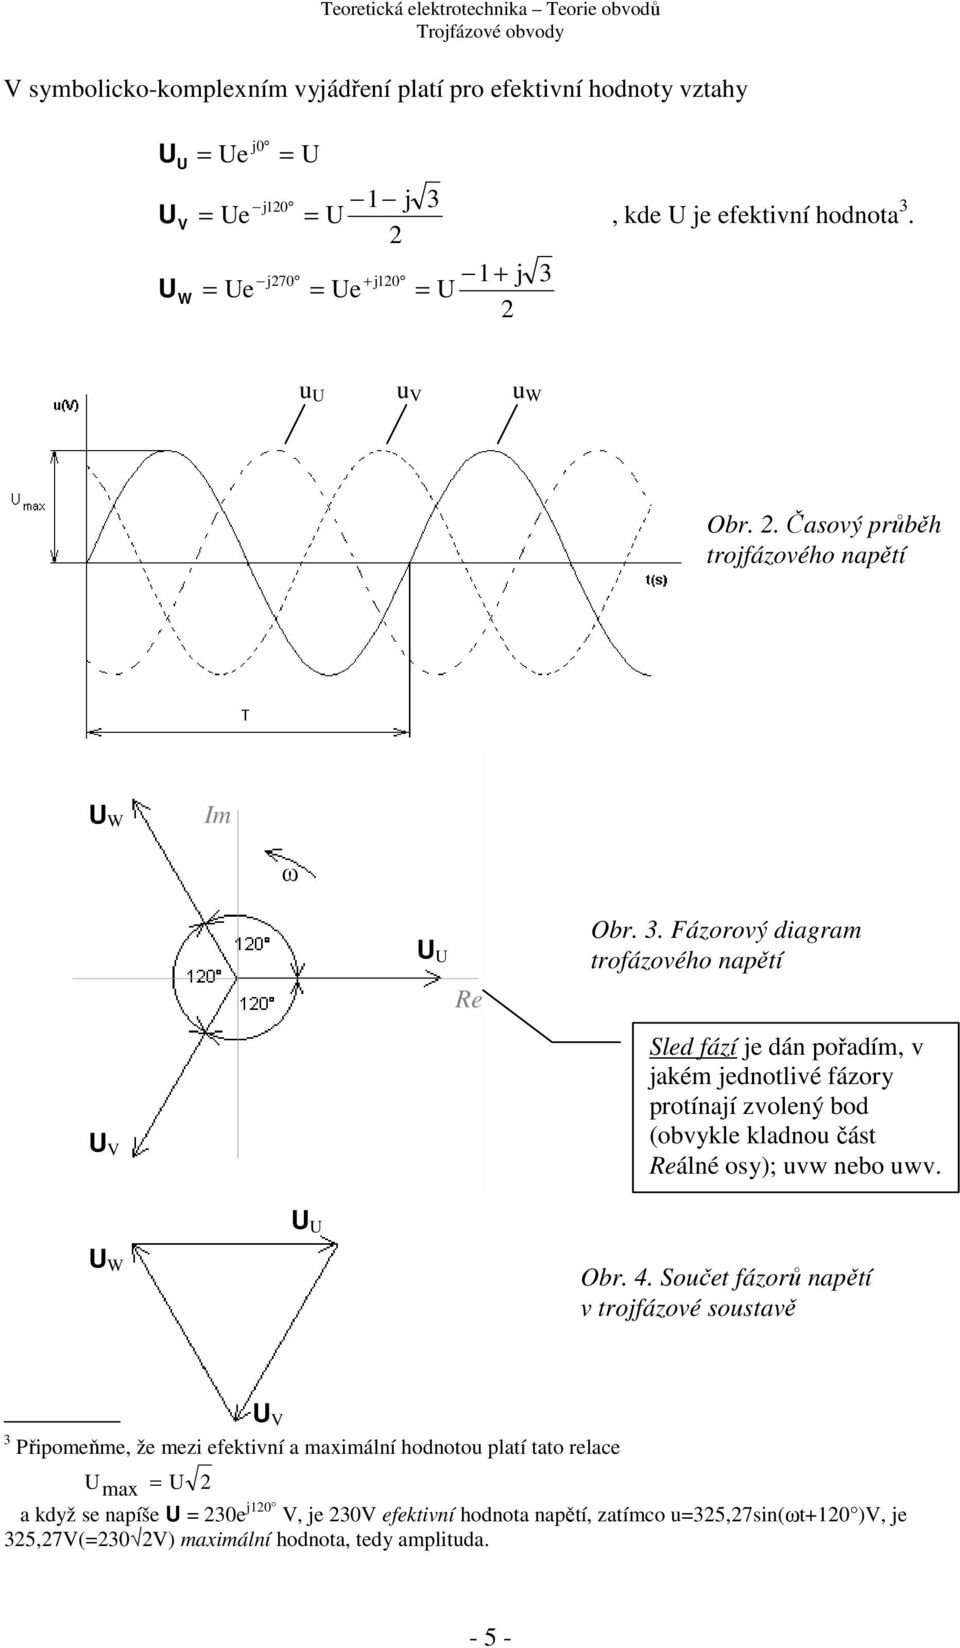 . Fázorový diagram troázového napětí Sled ází je dán pořadím, v jakém jednotlivé ázory protínají zvolený bod (obvykle kladno část Reálné osy); vw